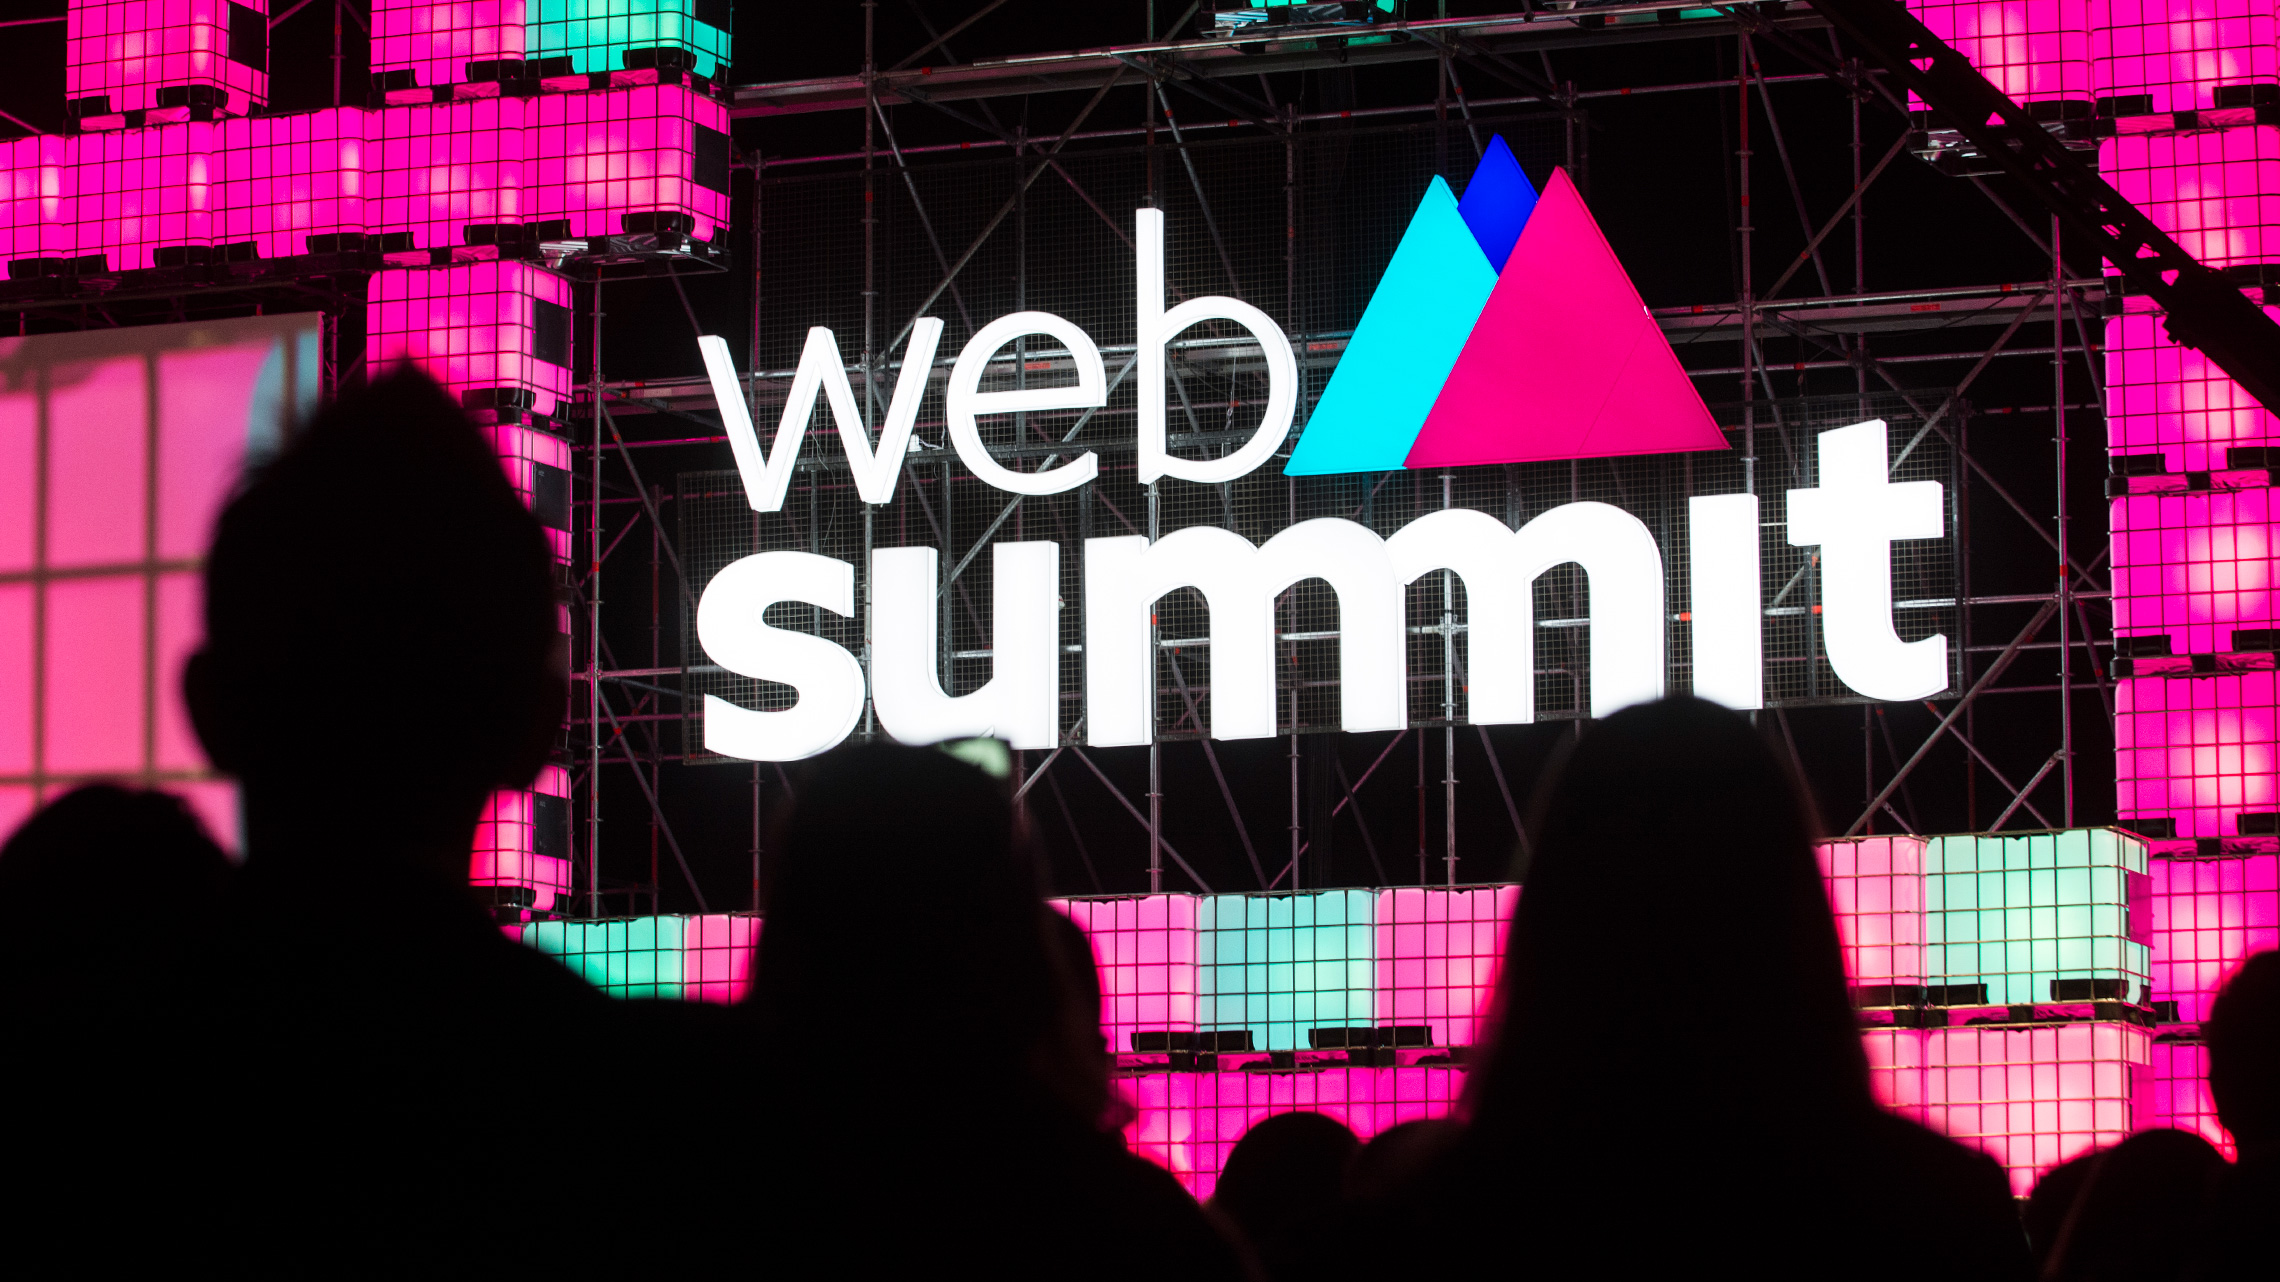 GitScrum at Web Summit 2021